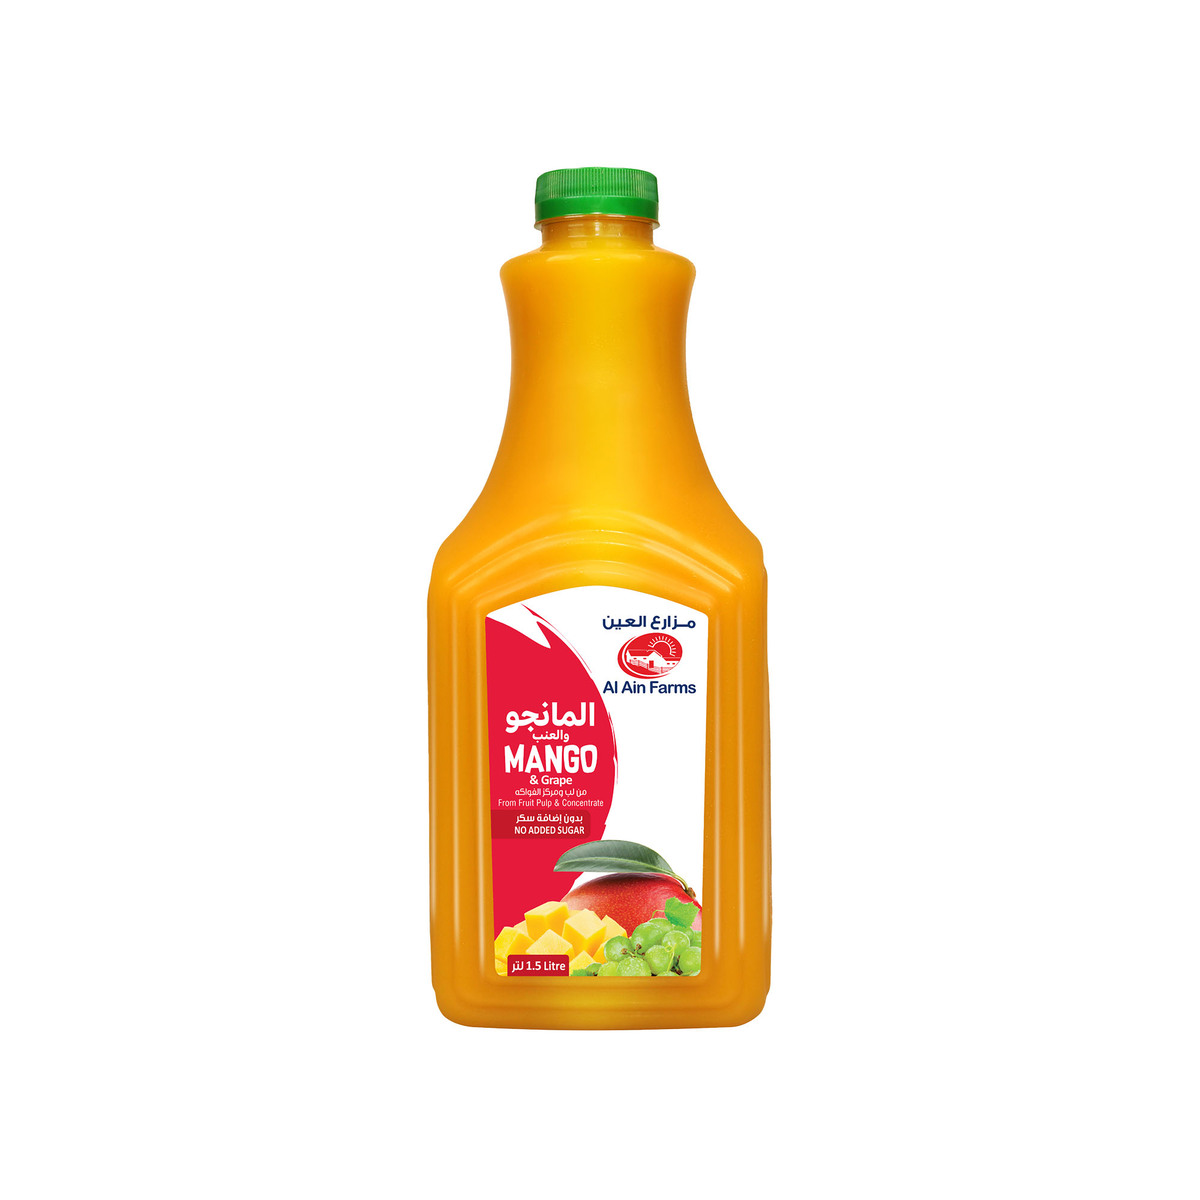 Buy Al Ain Mango & Grape Juice 1.5 Litres Online at Best Price | Fresh Juice Assorted | Lulu UAE in UAE